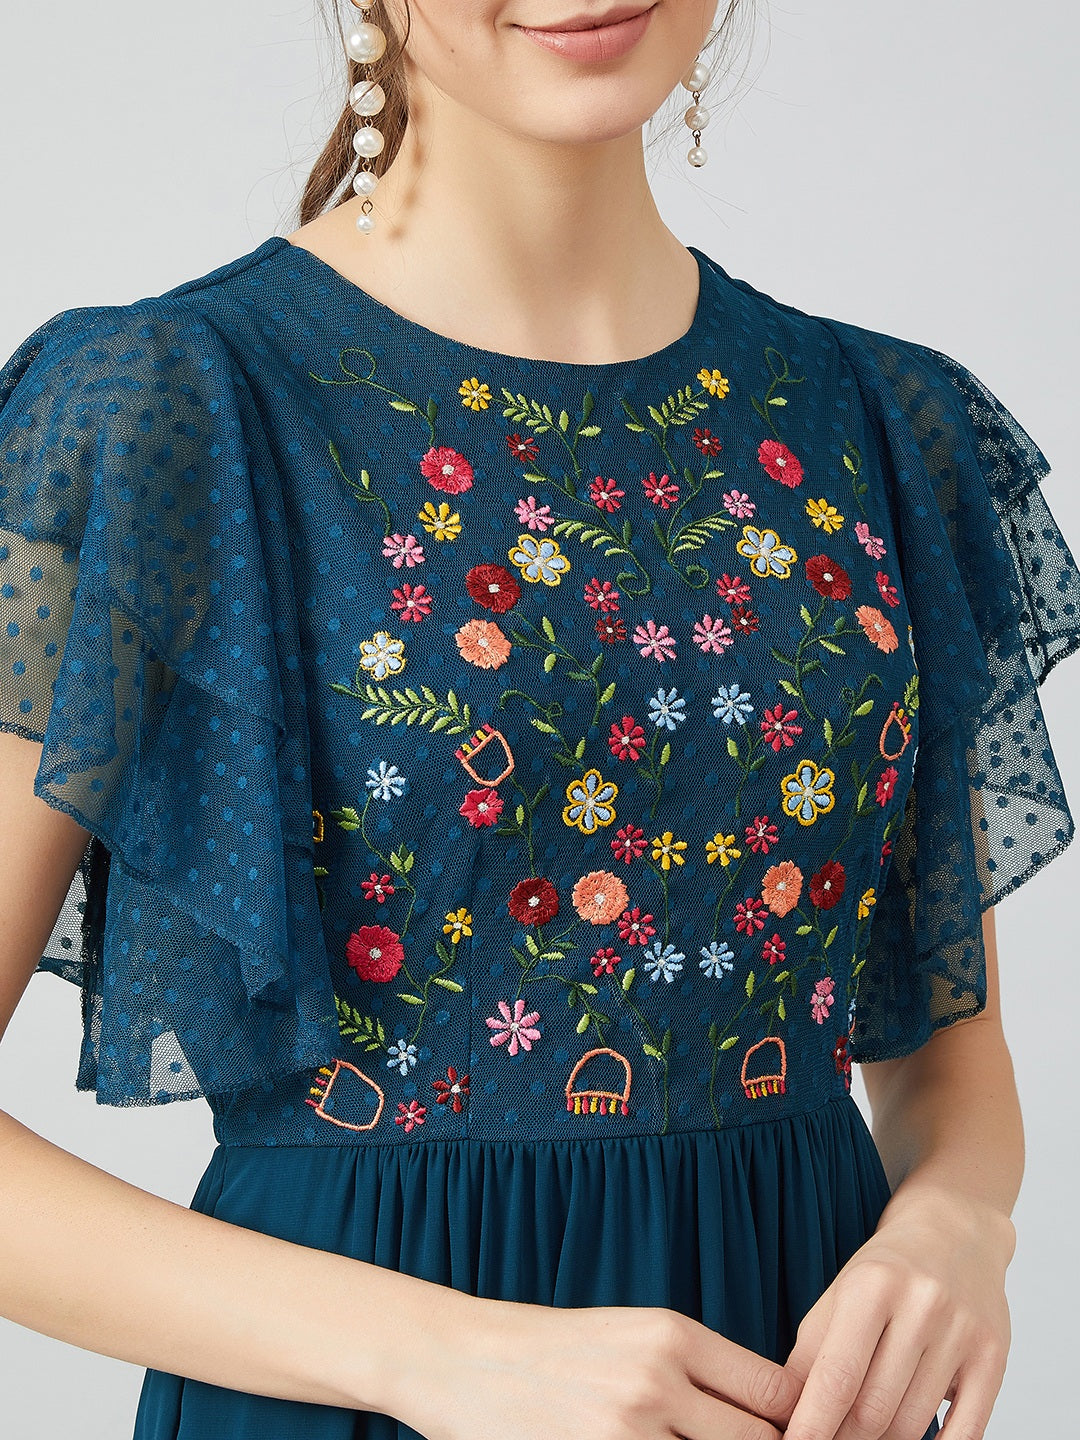 Athena Blue Embroidered Maxi Dress - Athena Lifestyle